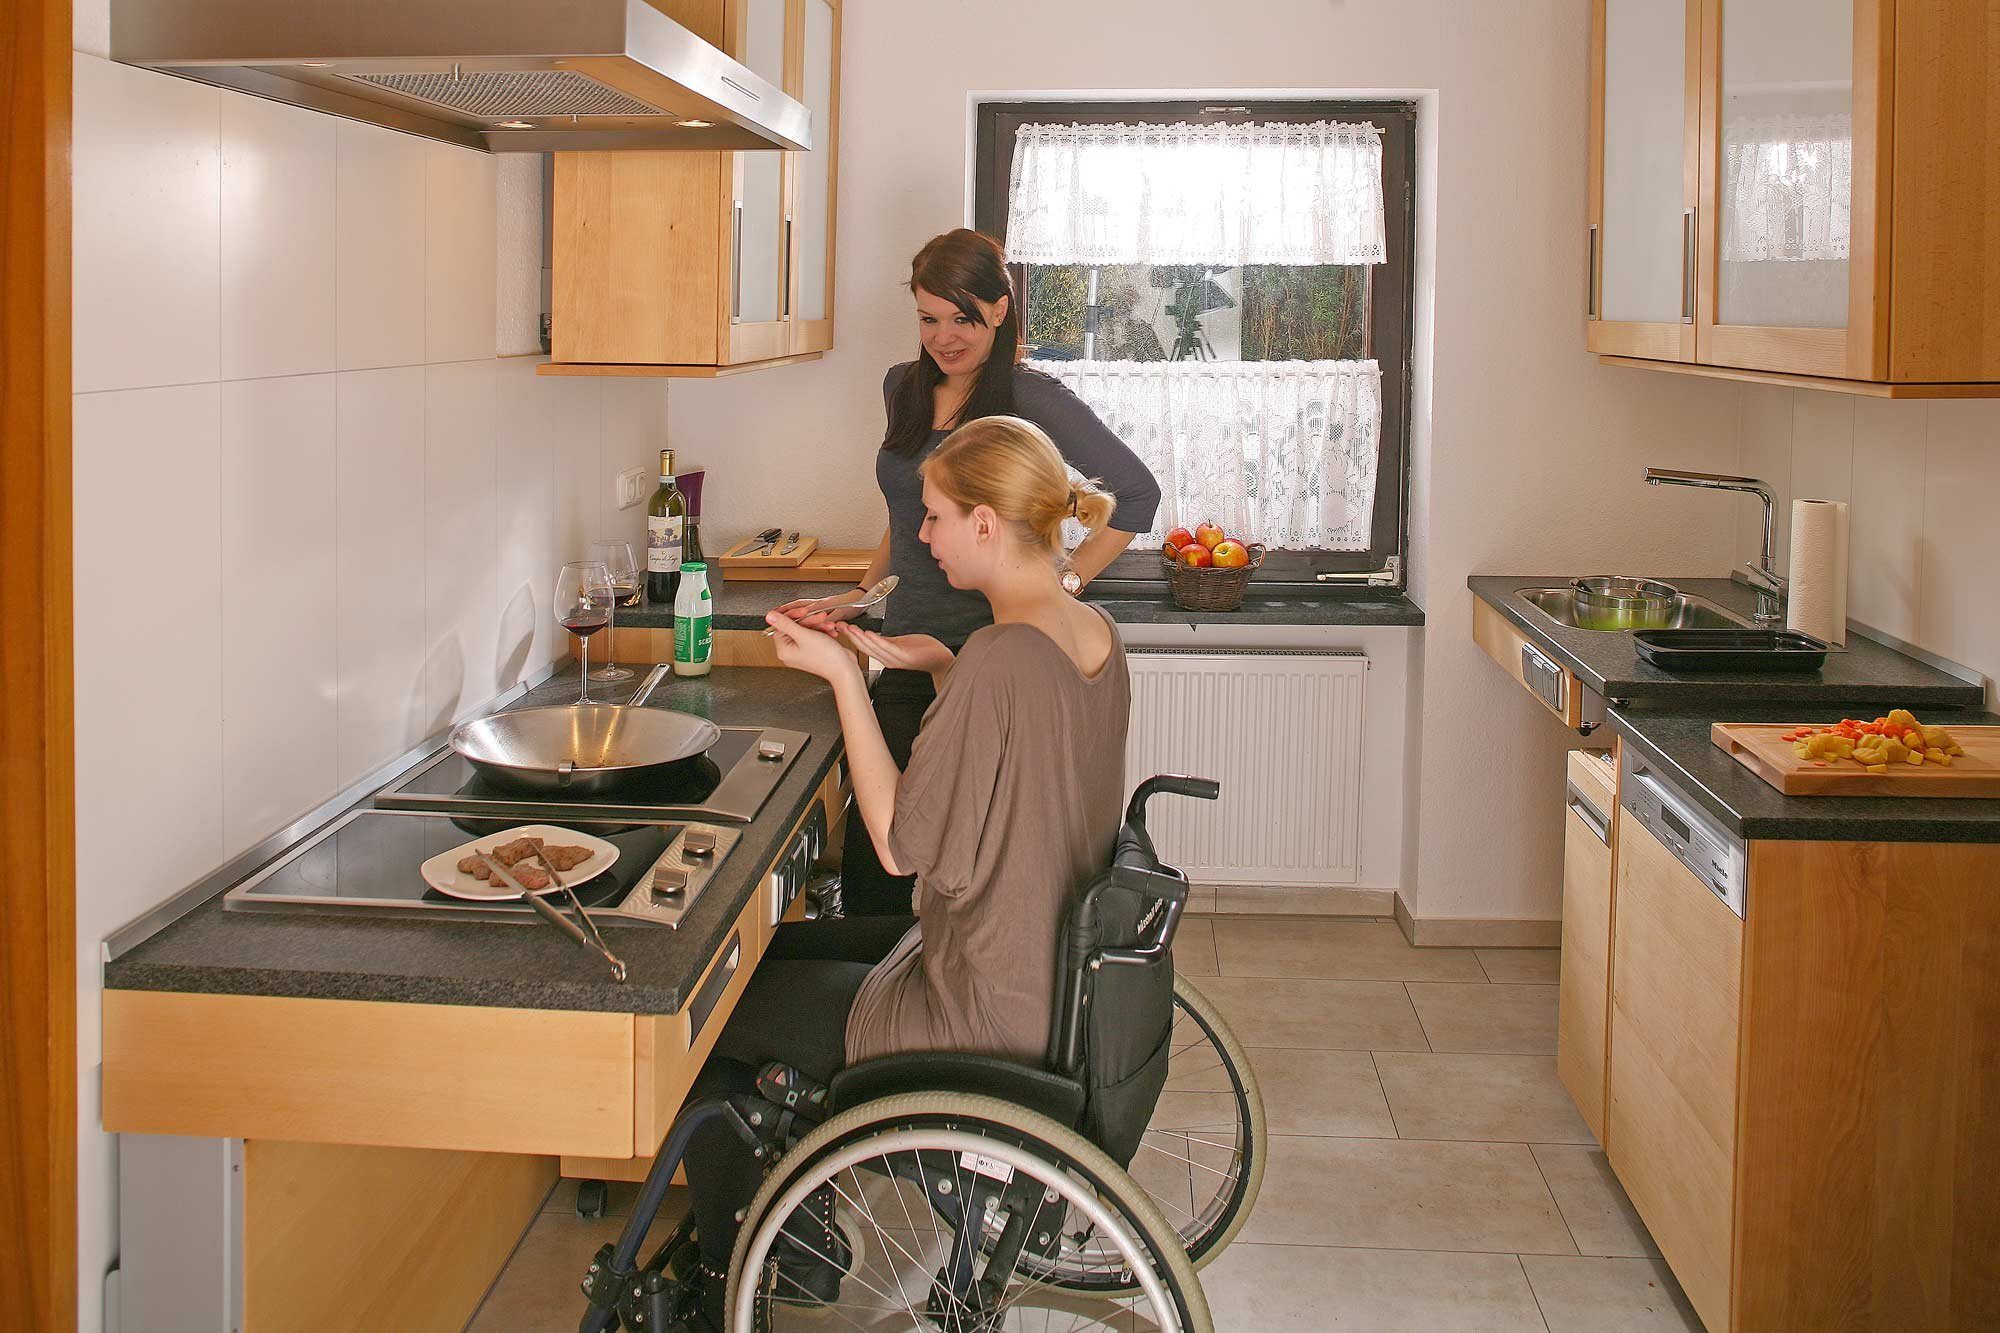 Покупка жилья инвалидам. Кухня для инвалида колясочника. Кухня для людей с ограниченными возможностями. Кухонный гарнитур для инвалидов колясочников. Кухня для маломобильных людей.